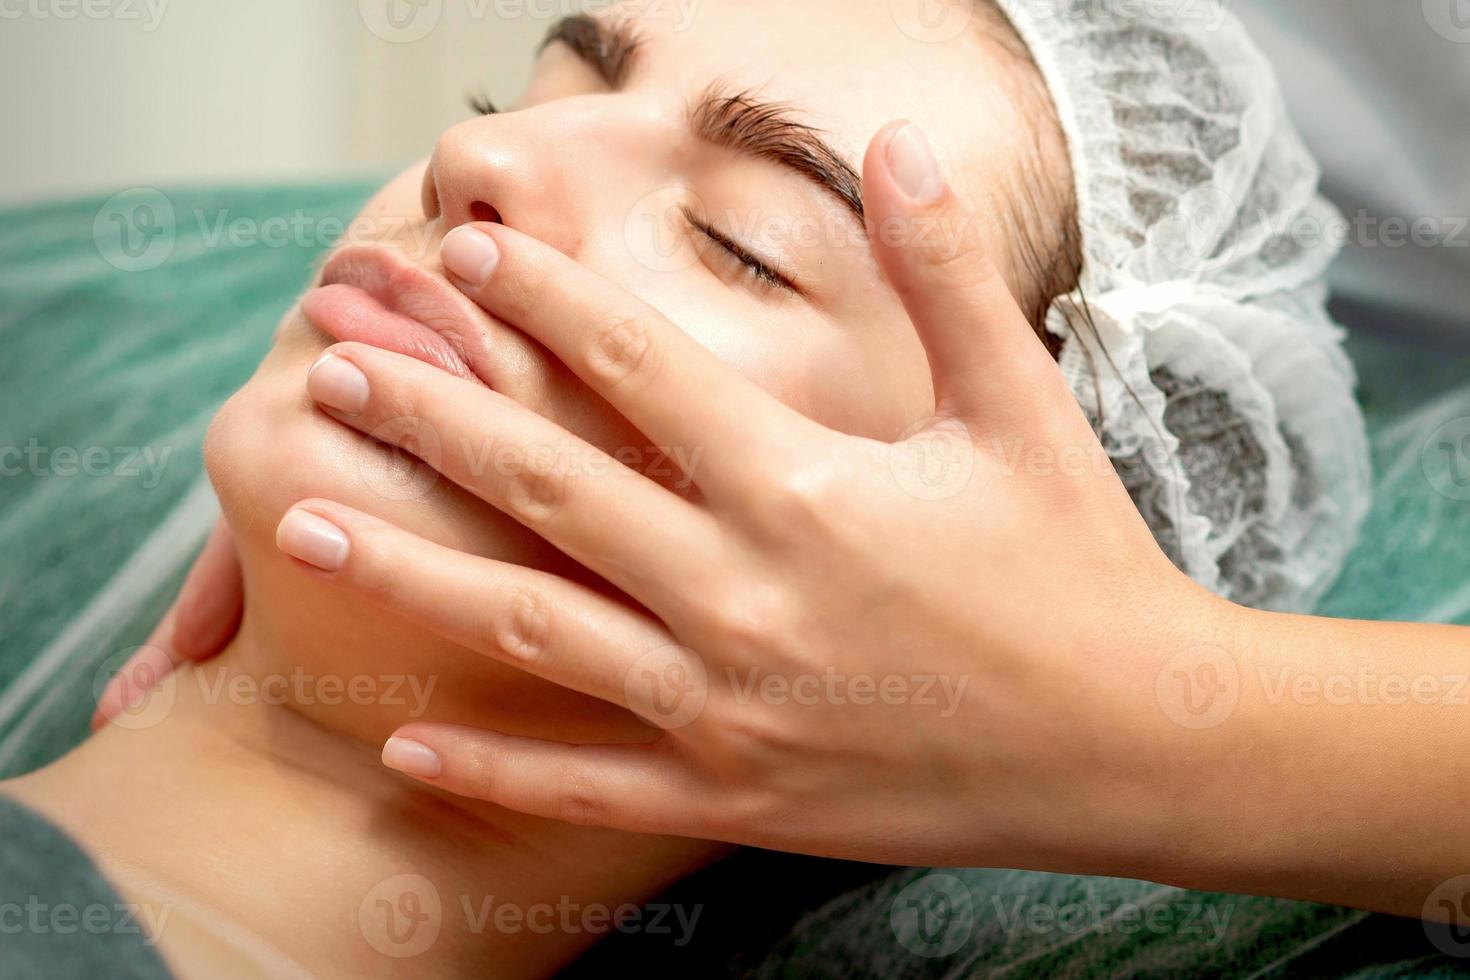 jovem mulher recebendo facial massagem foto